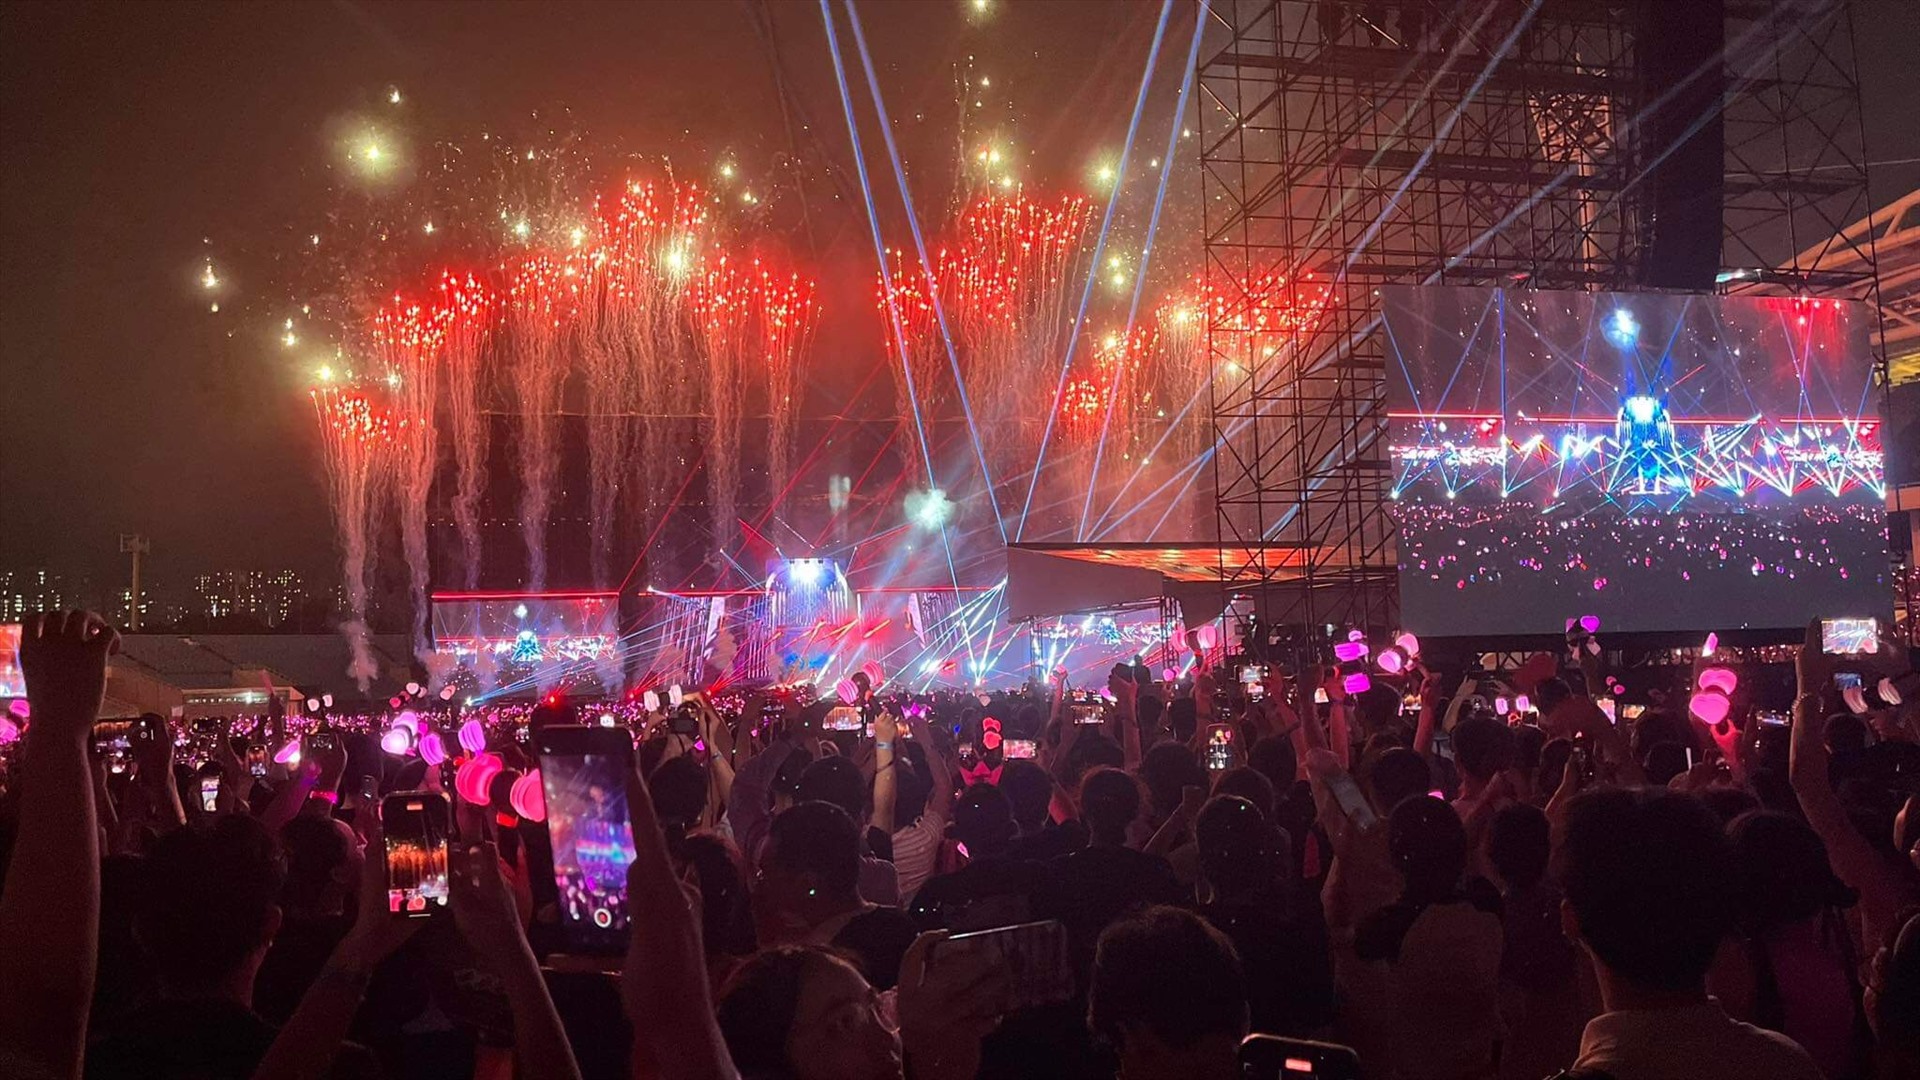 Nhóm nhạc nhà YG Entertainment tiếp tục thể hiện những màn trình diễn bùng nổ, khuấy động không khí ở sân Mỹ Đình. Đây cũng là đêm diễn cuối cùng cuối cùng trong tour diễn toàn cầu Born Pink của Blackpink tại châu Á.